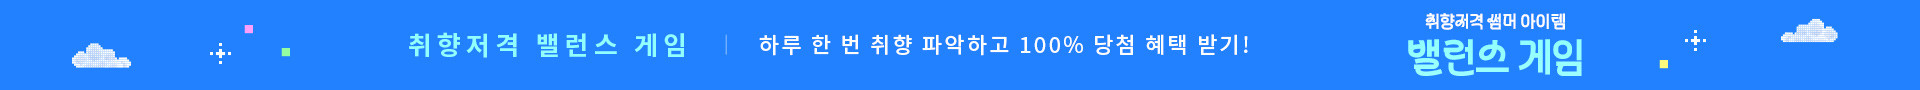 KM 코오롱몰 6월 밸런스게임 이벤트_PC